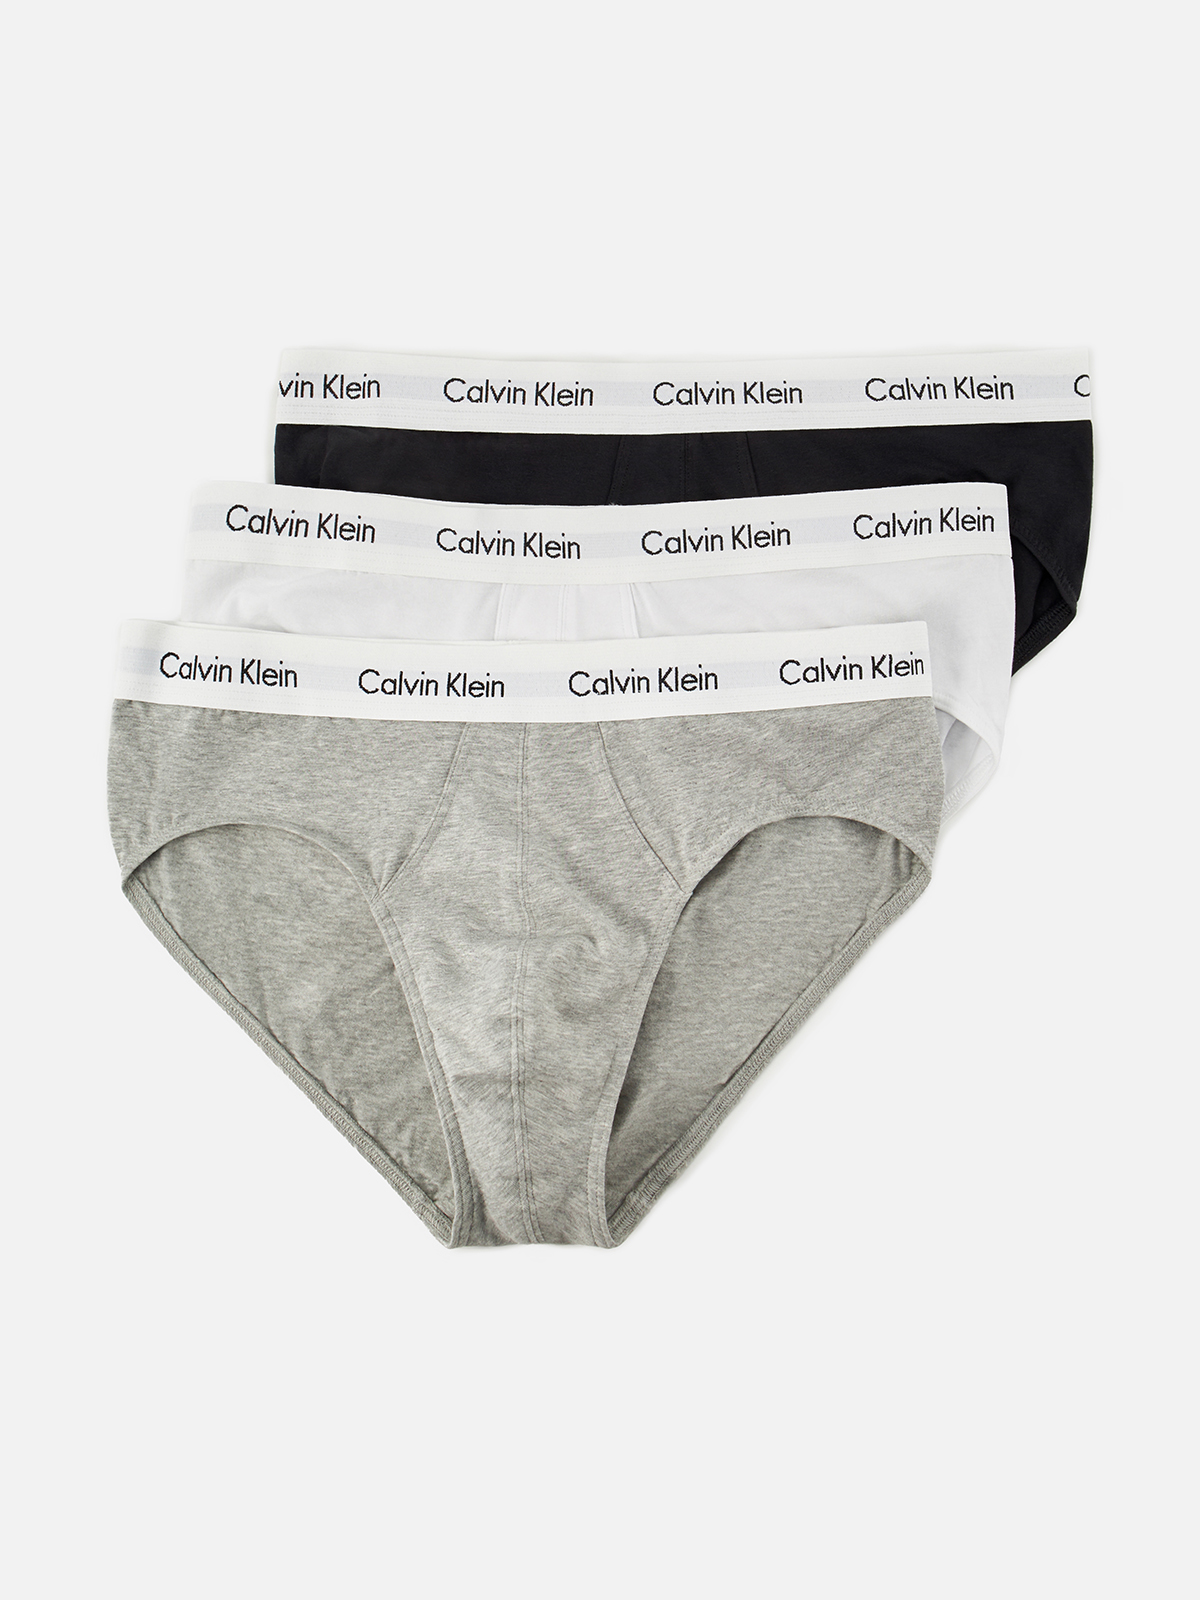 Комплект трусов мужских Calvin Klein Underwear 0000U2661G белых, серых, черных M